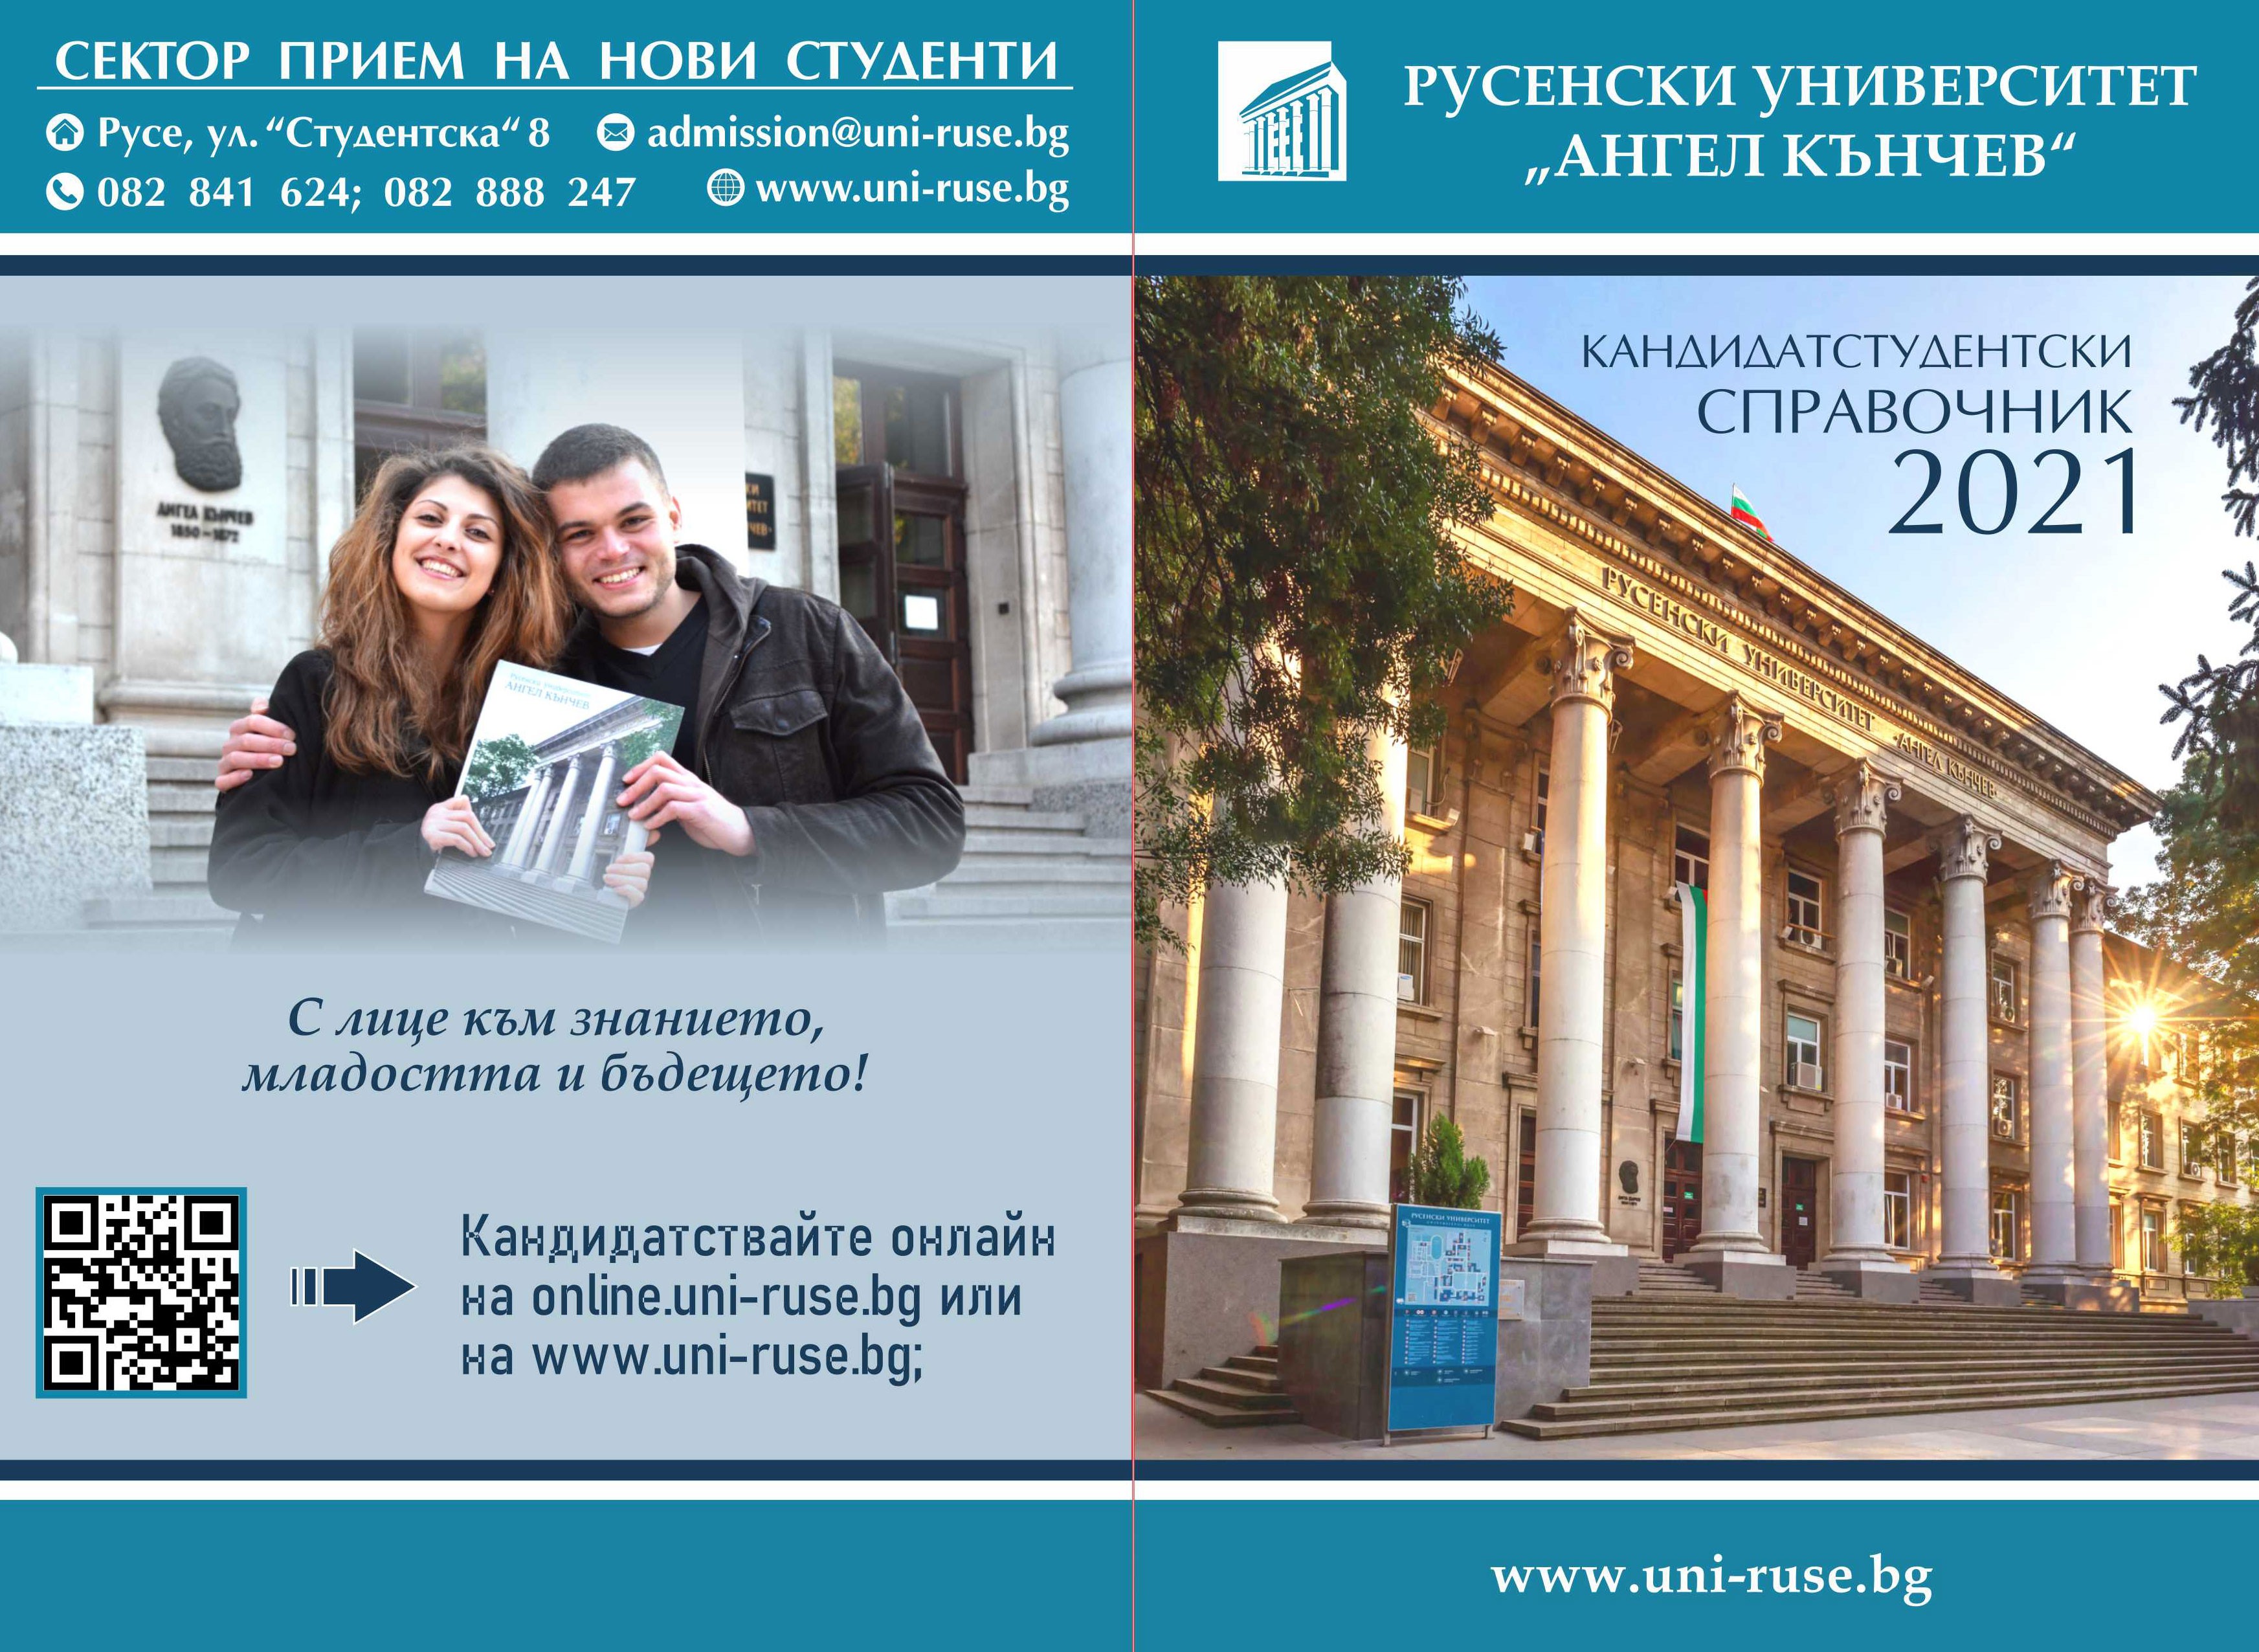 Русенският университет въвежда онлайн предварително кандидатстване и записване